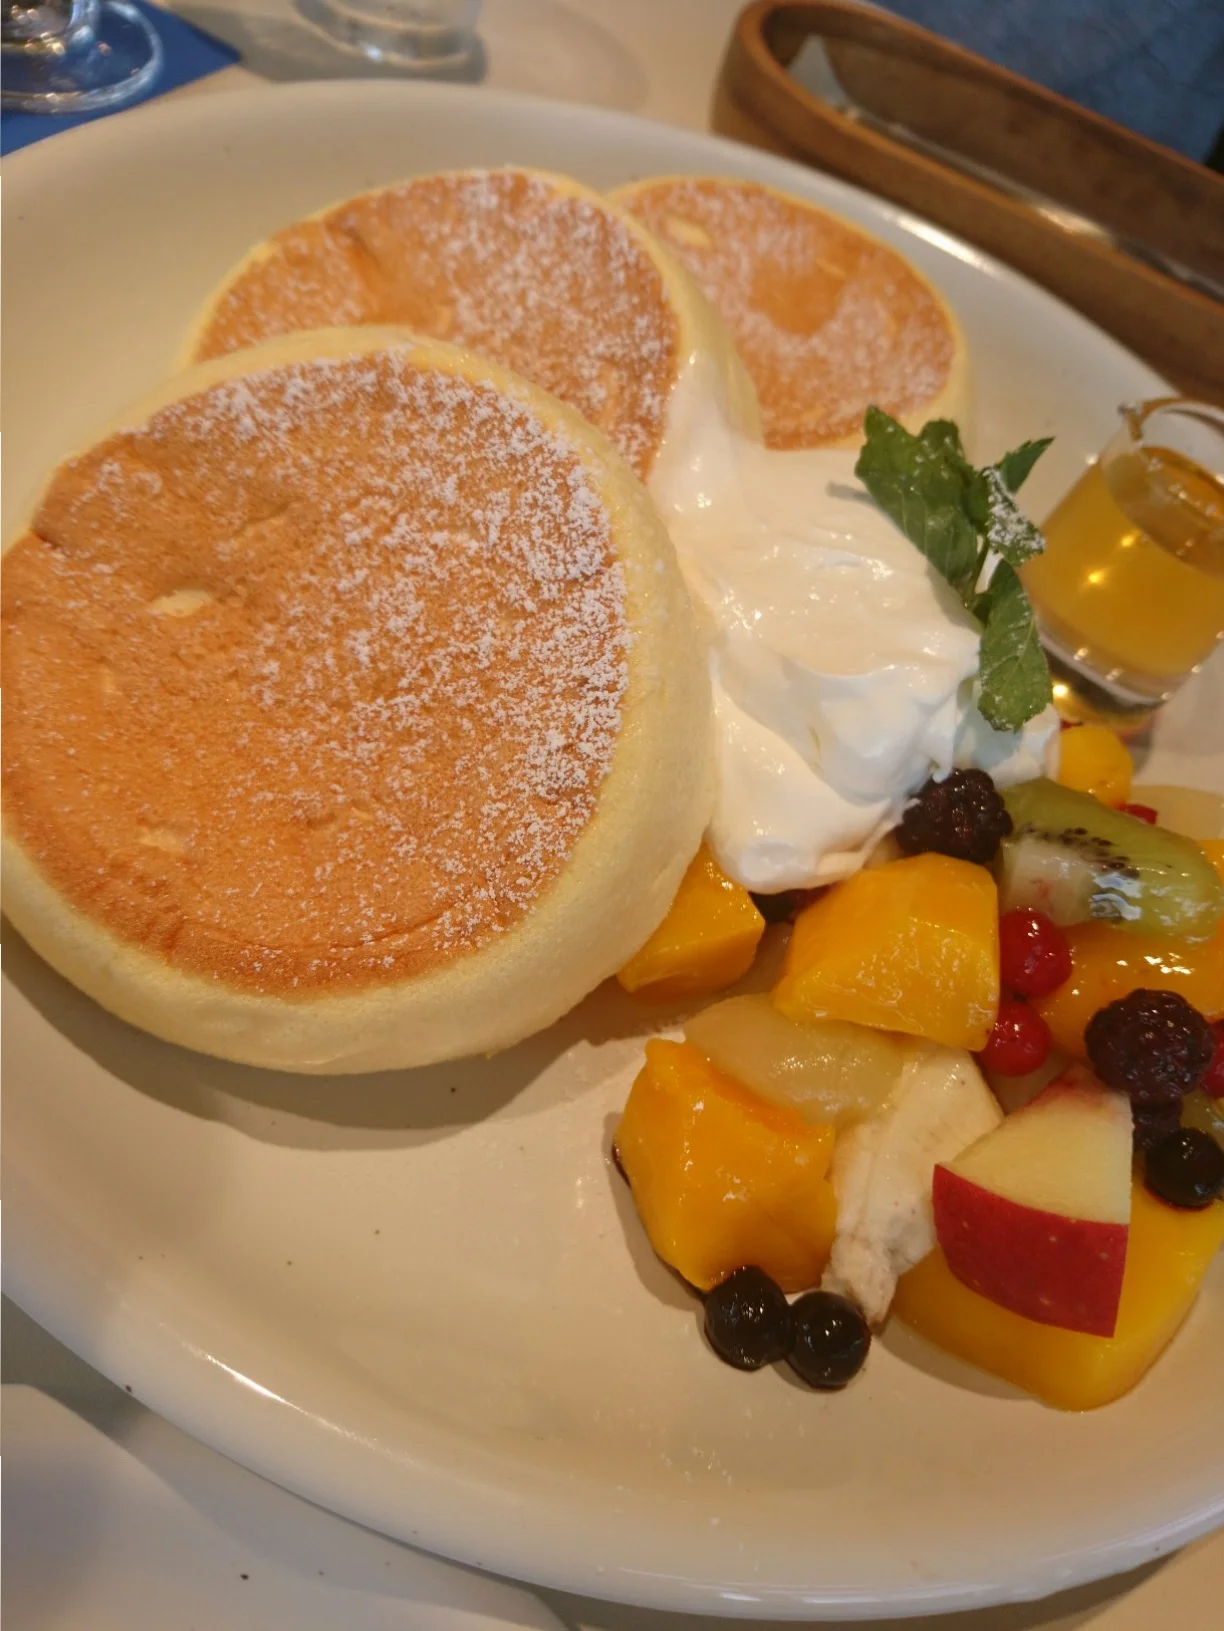 兵庫県 西宮 海を眺める 映え カフェでいただく ふわふわパンケーキが美味 Moreインフルエンサーズブログ More